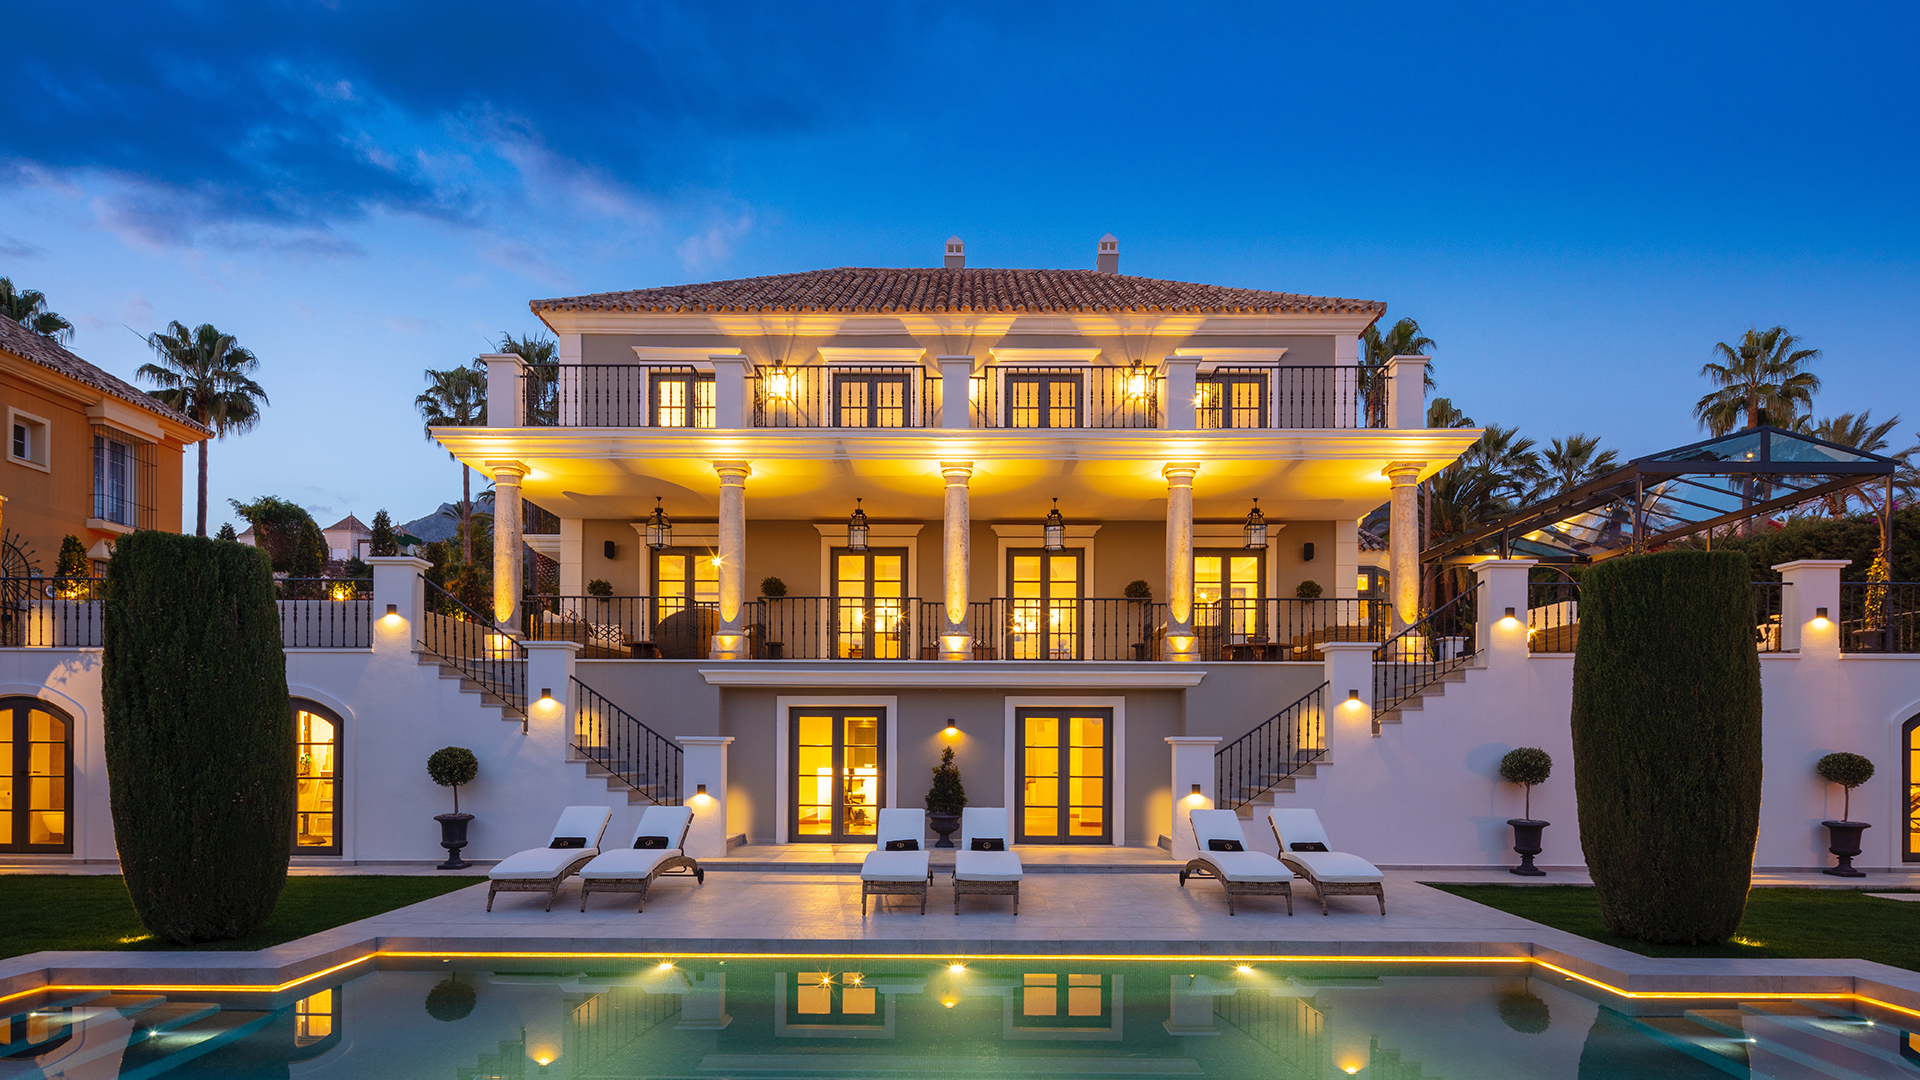 Comprar una propiedad en Marbella